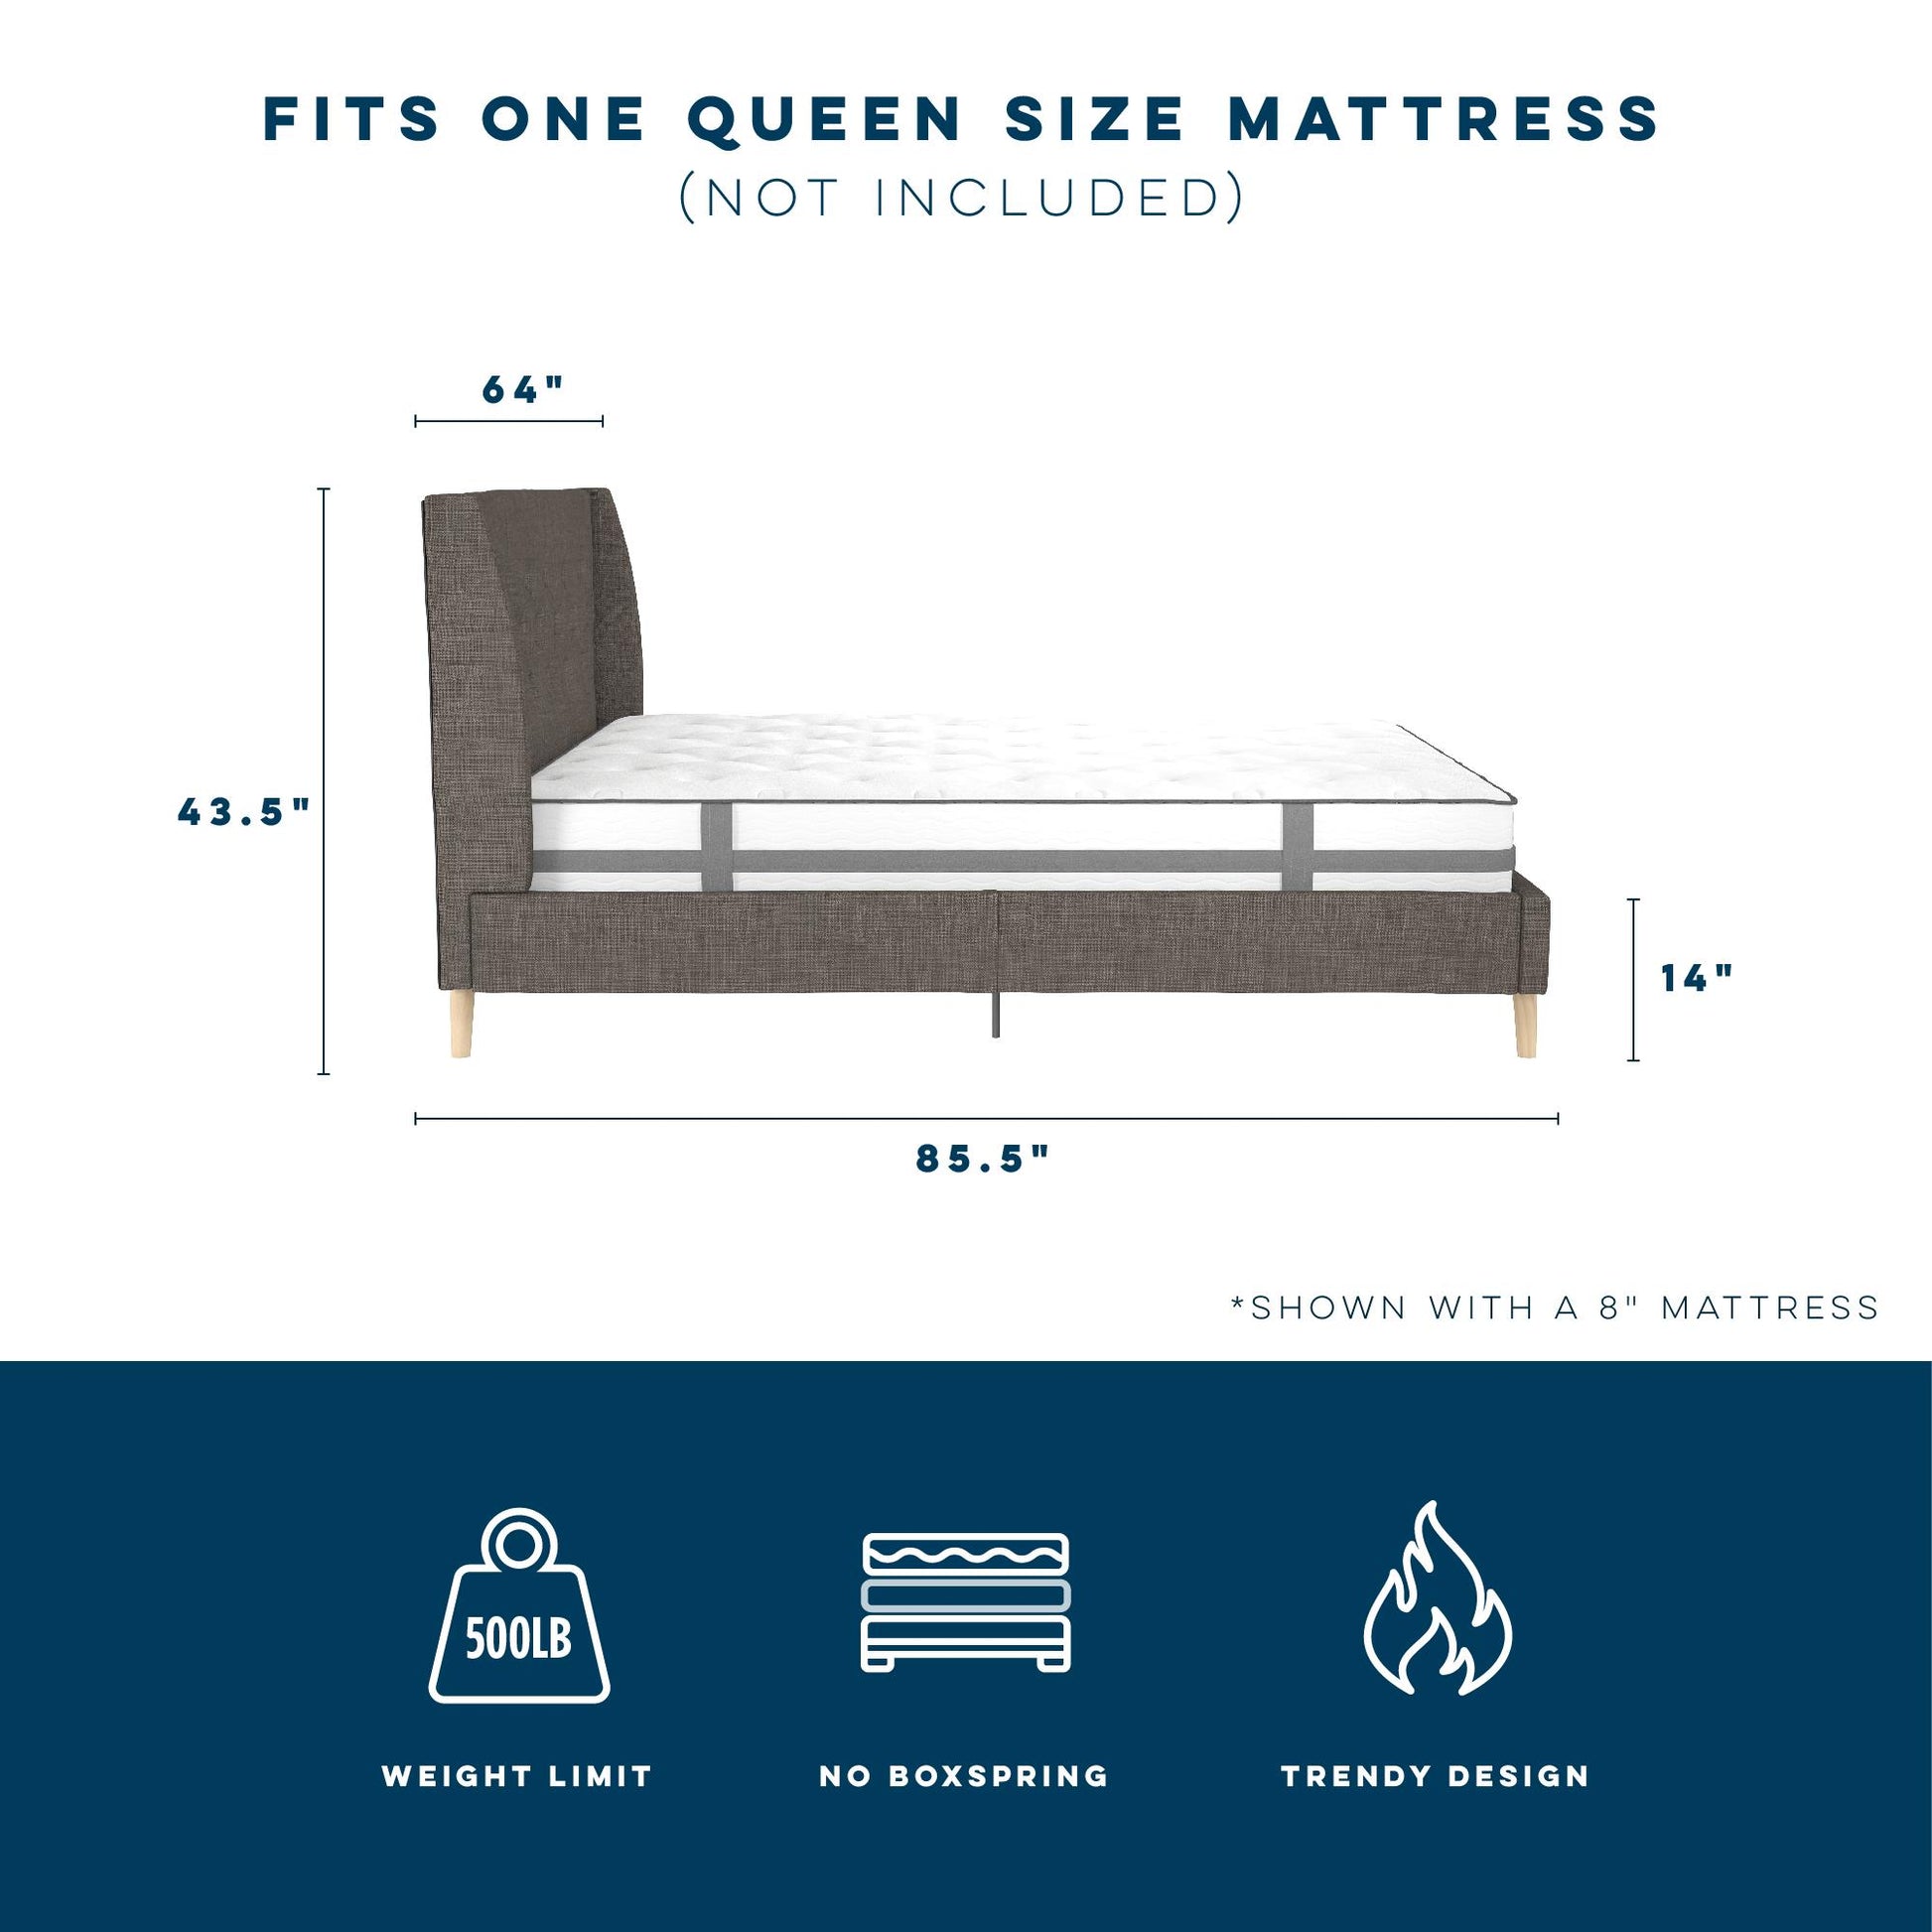 Her Majesty Bed - Grey Linen - Queen